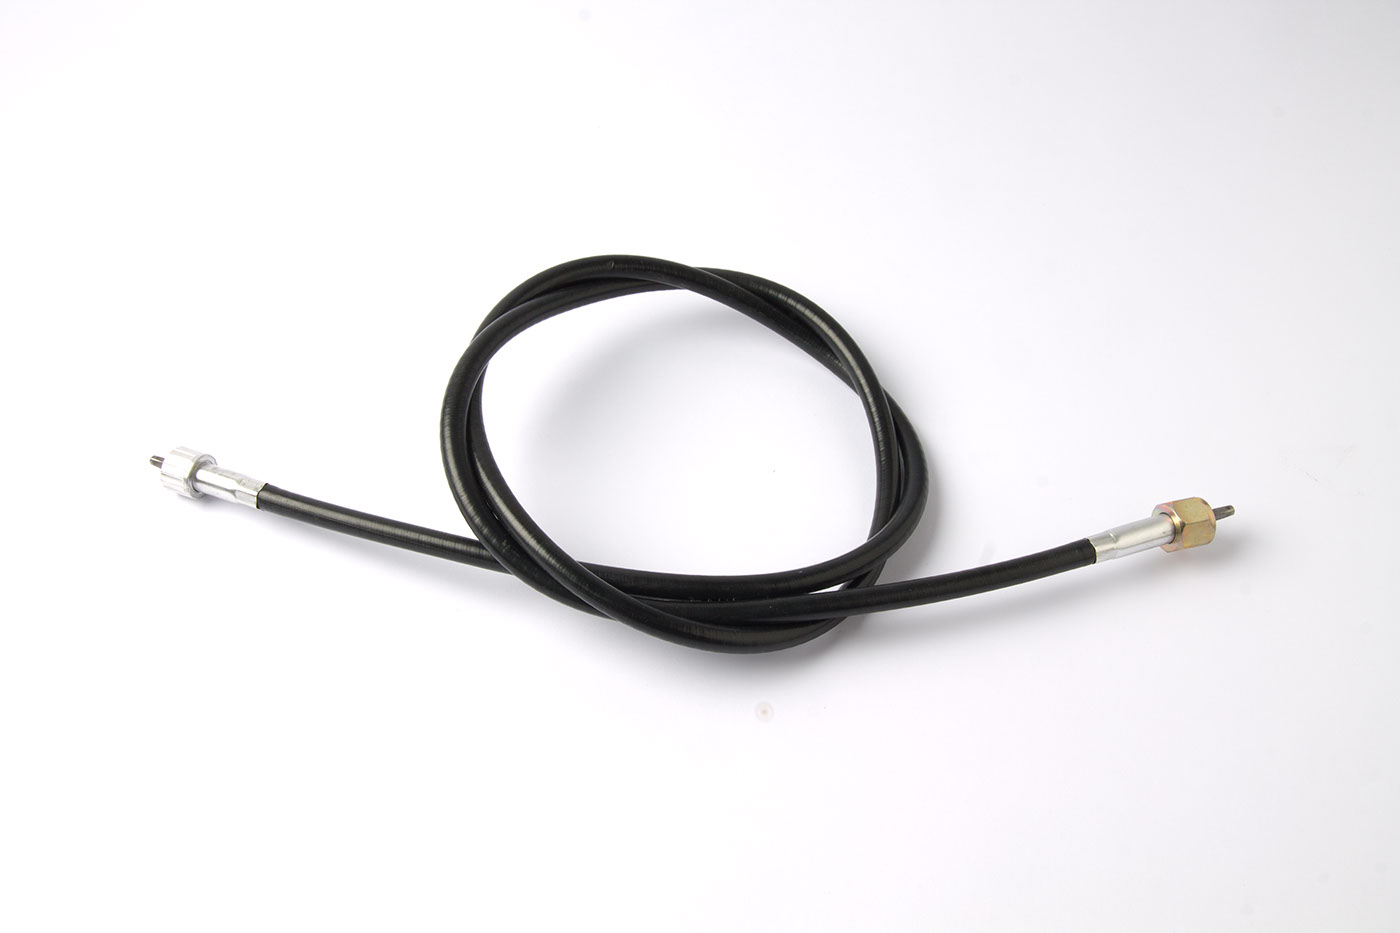 Tachowelle
Speedometer cable
Câble de compteur
Tacho